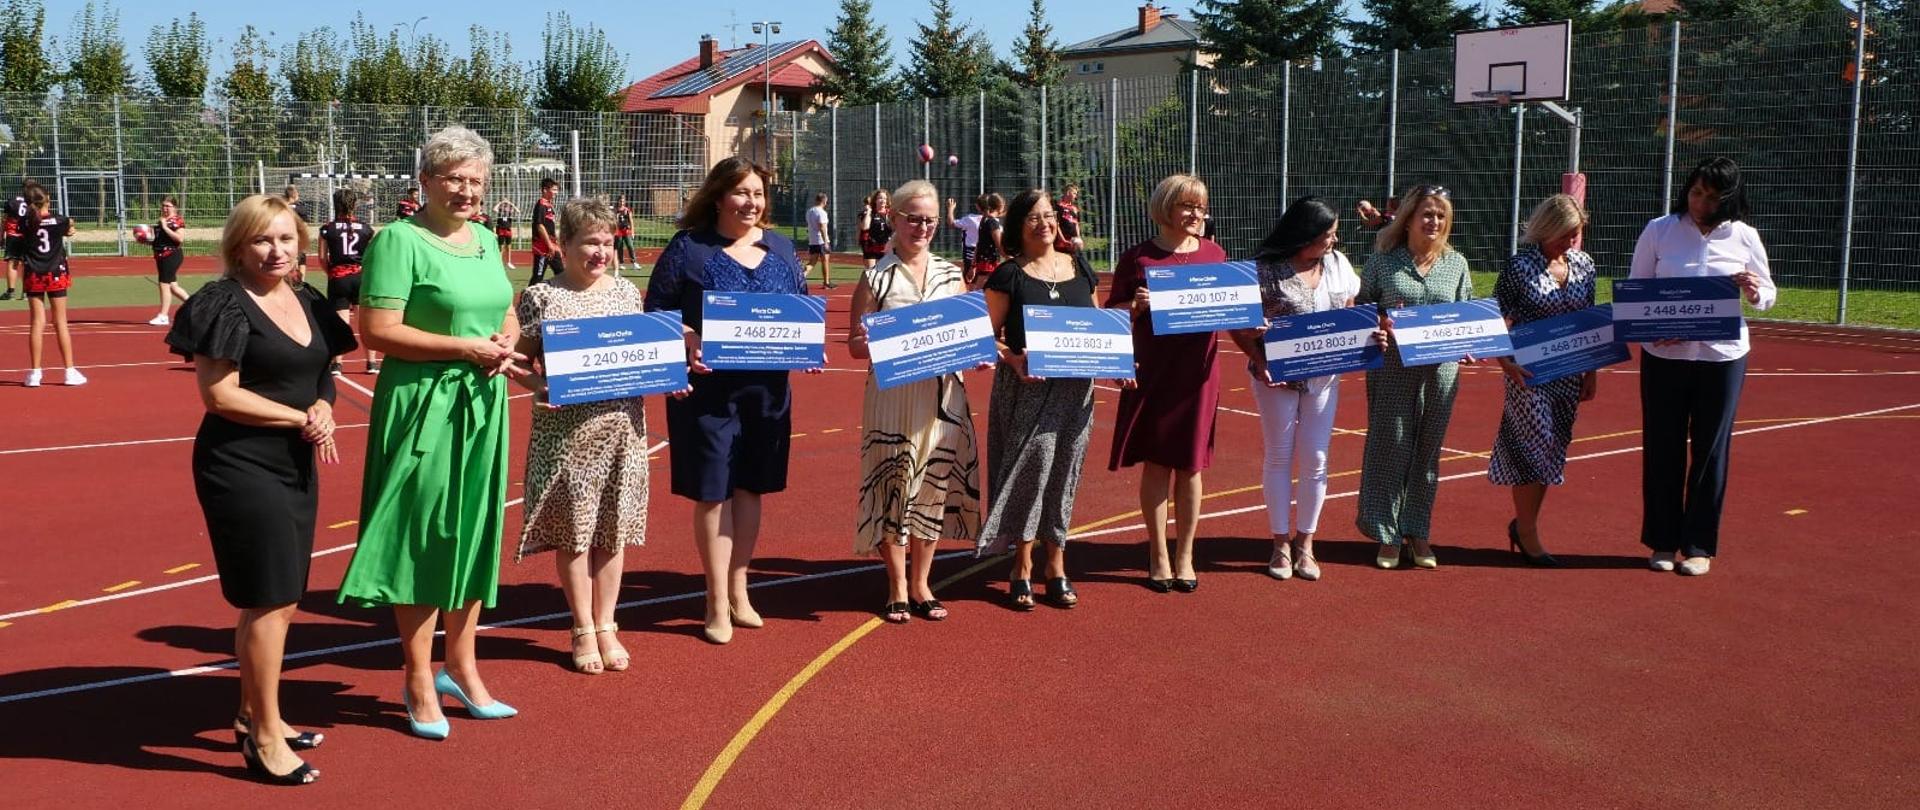 Zdjęcie przedstawia 11 osób stojących w rzędzie na boisku szkolnych trzymających w rękach tabliczki. 